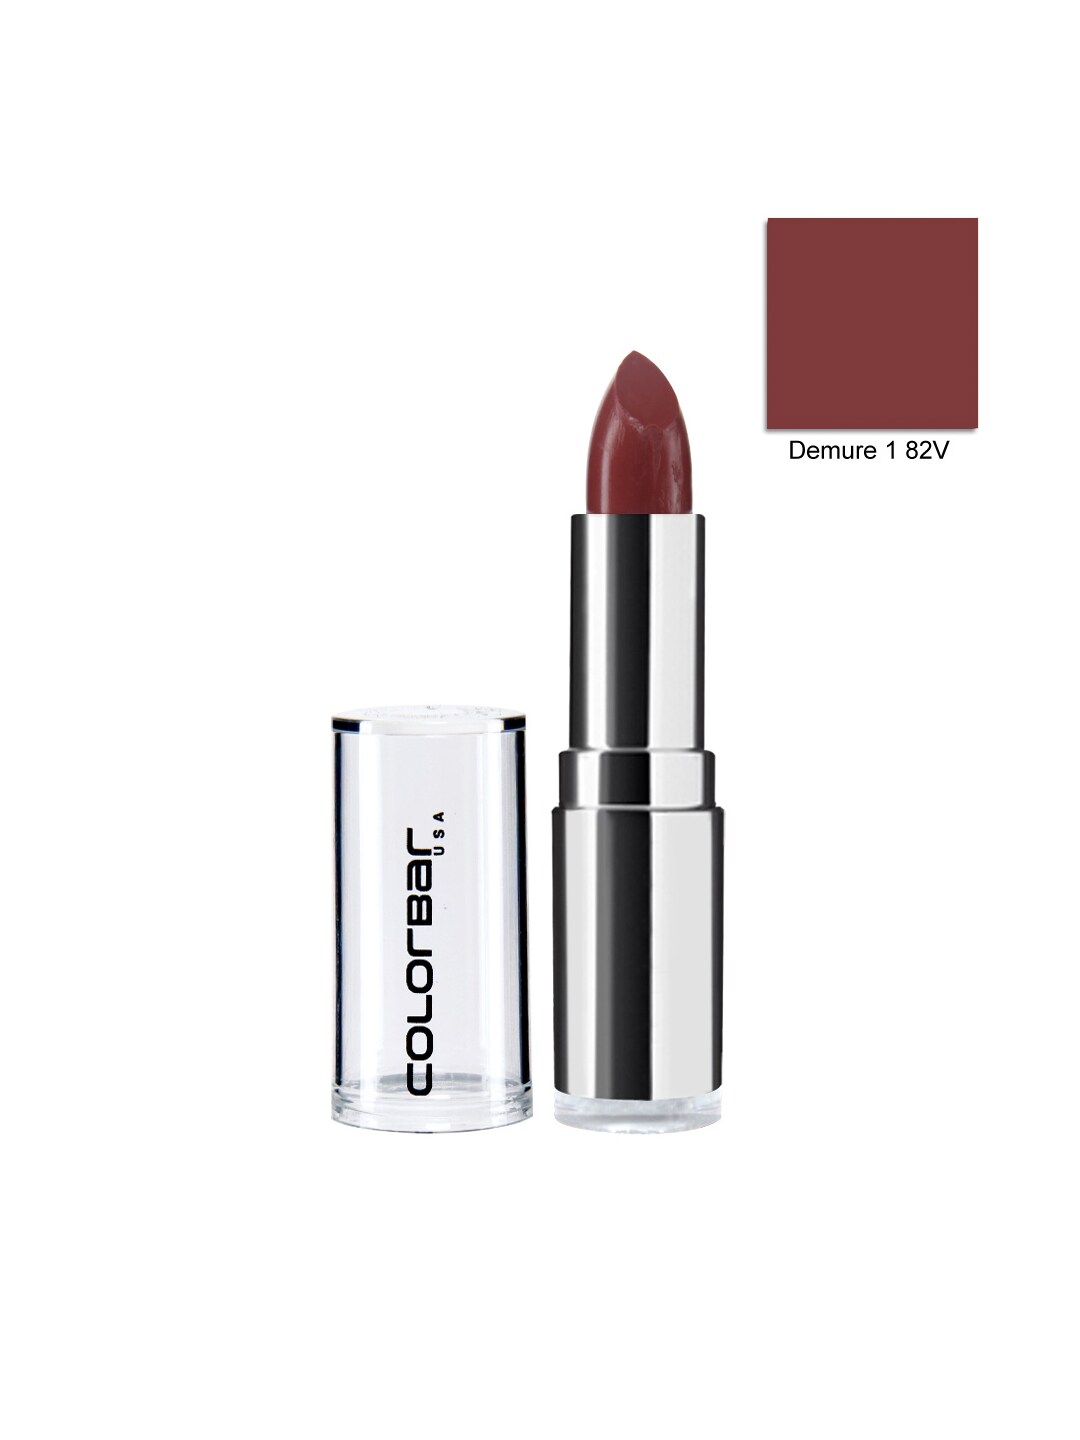 Colorbar Velvet Matte Demure 1 Lipstick 82V